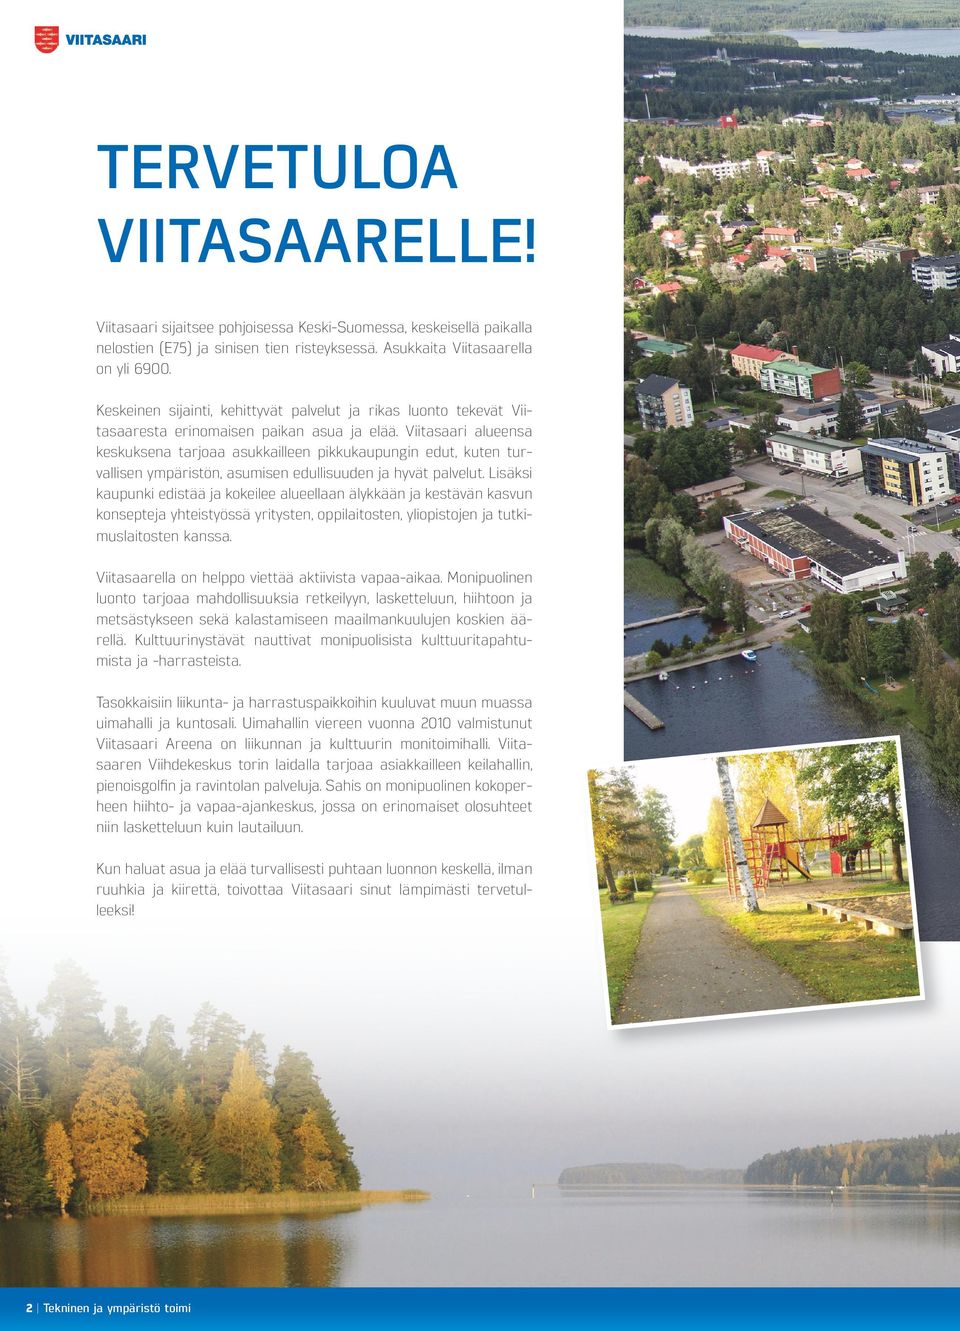 Viitasaari alueensa keskuksena tarjoaa asukkailleen pikkukaupungin edut, kuten turvallisen ympäristön, asumisen edullisuuden ja hyvät palvelut.